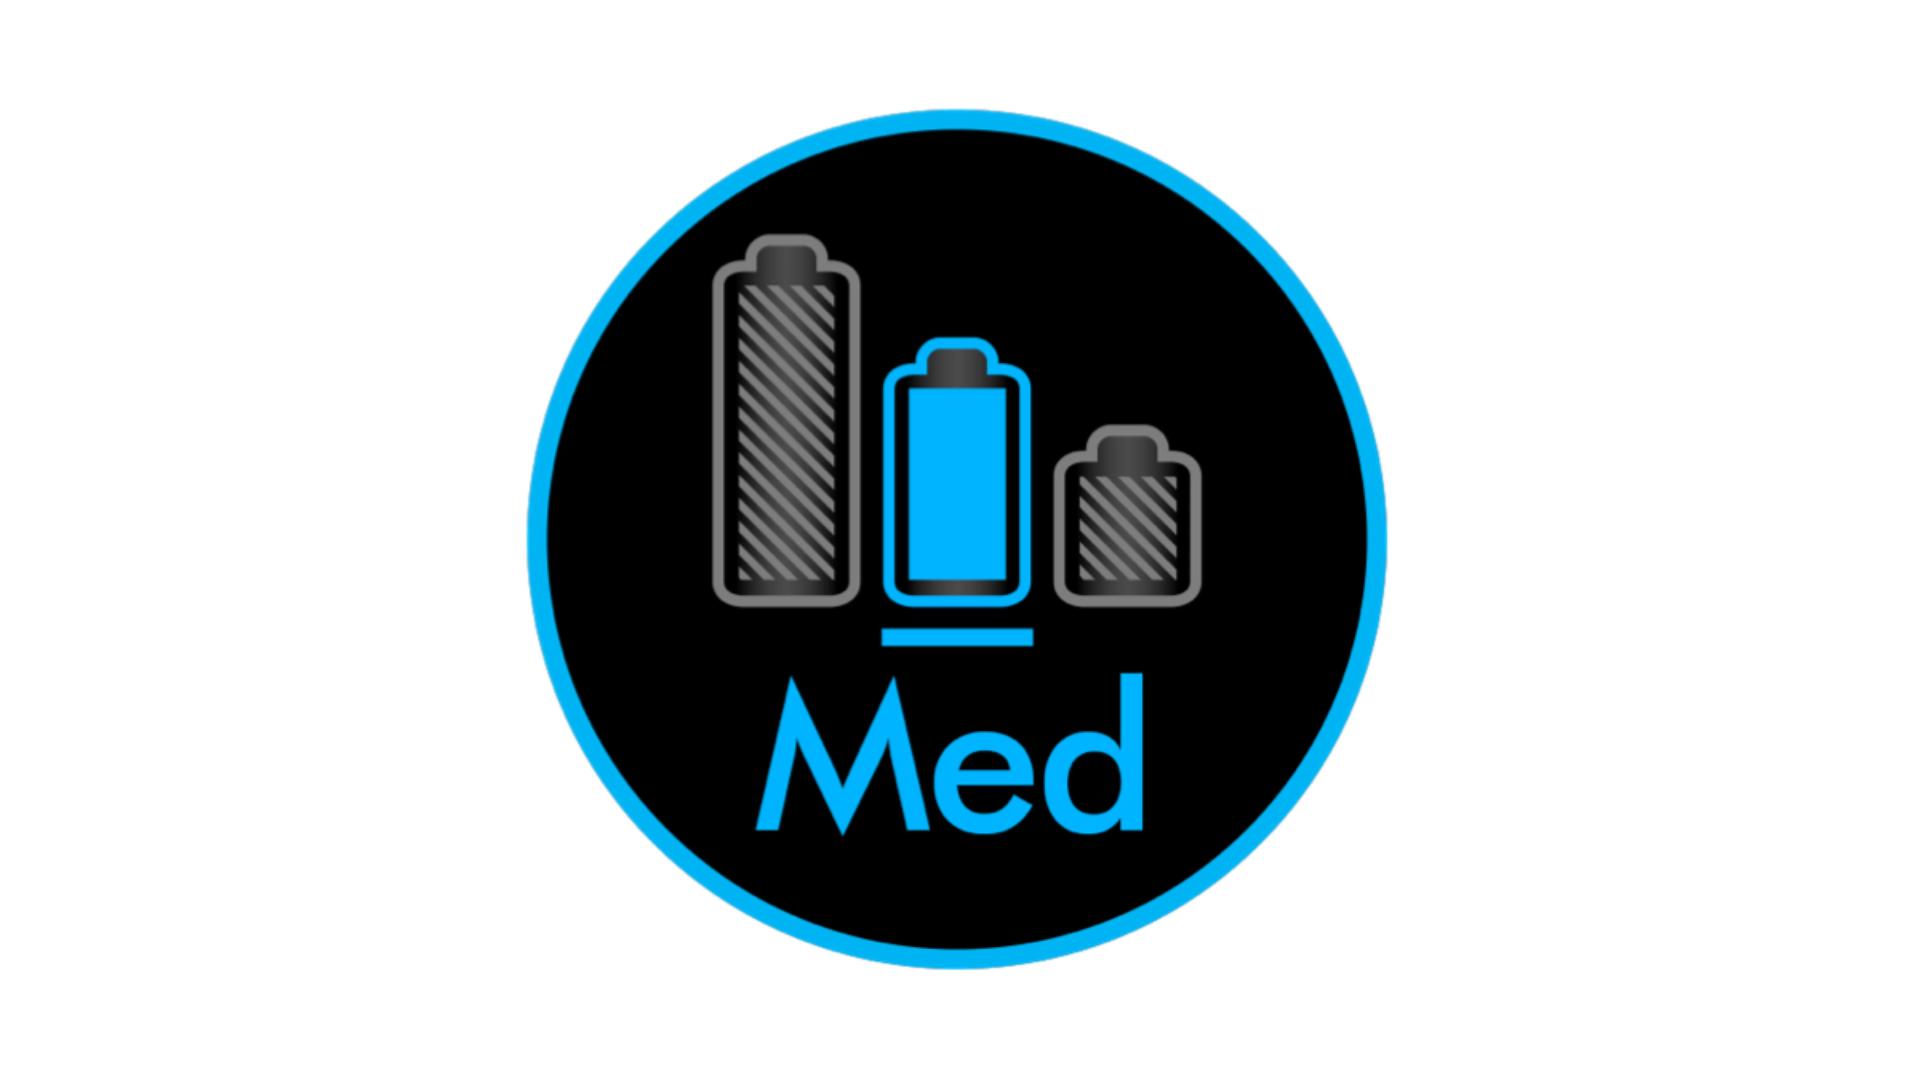 Ekran LCD wyświetlający tryb Med